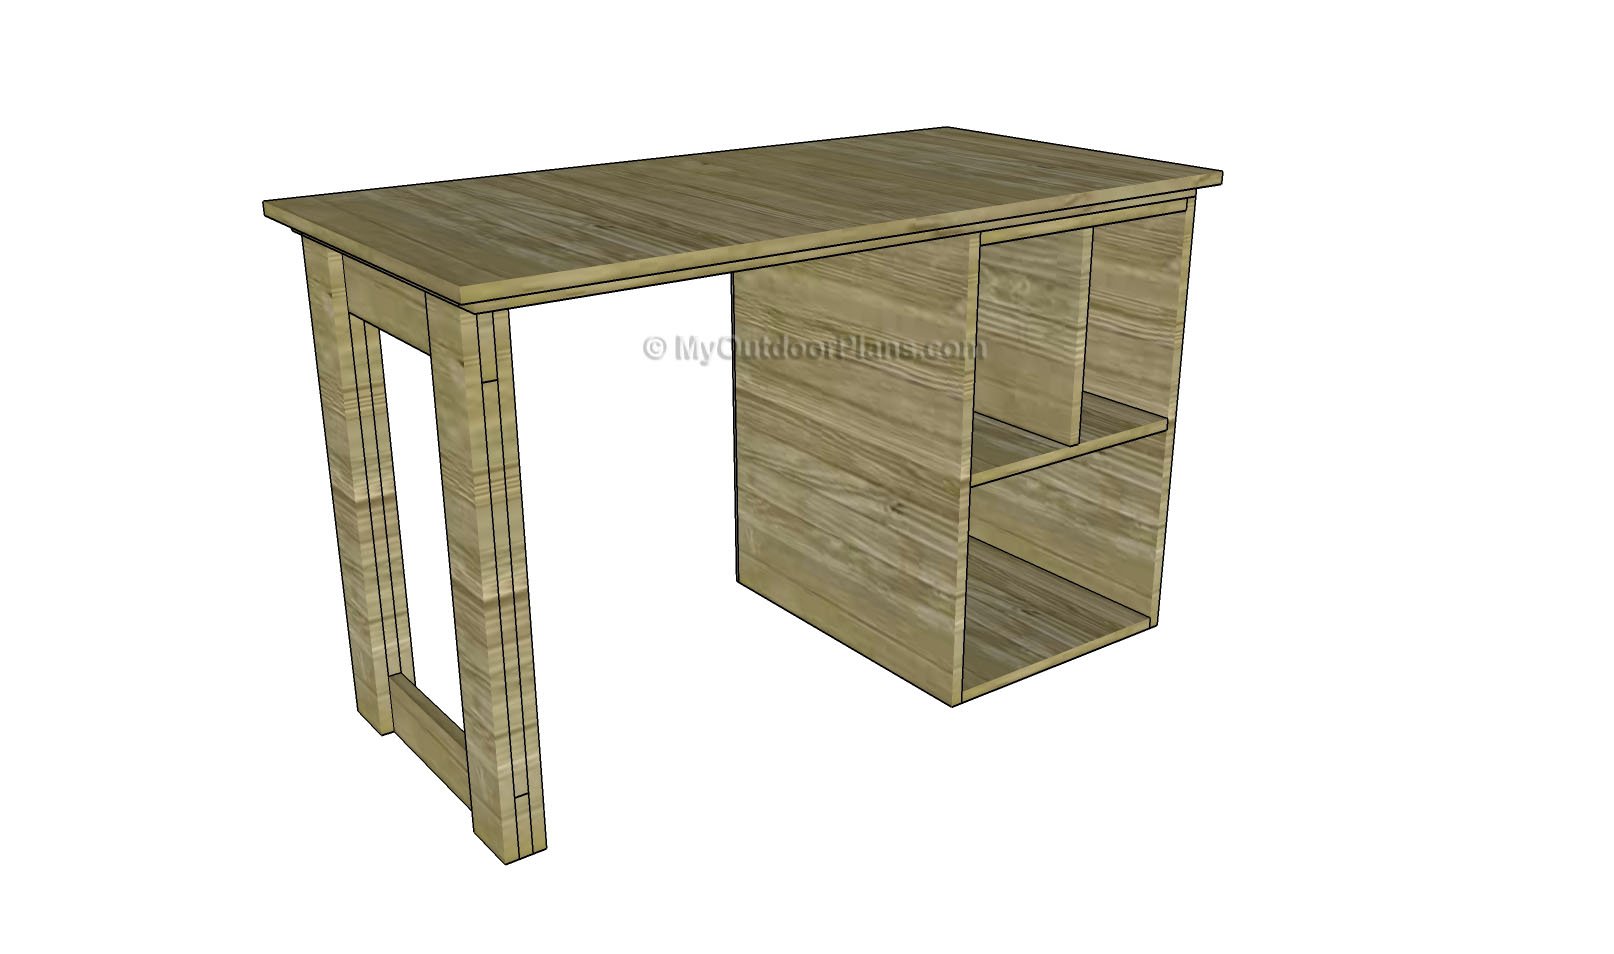 Wood desk plans